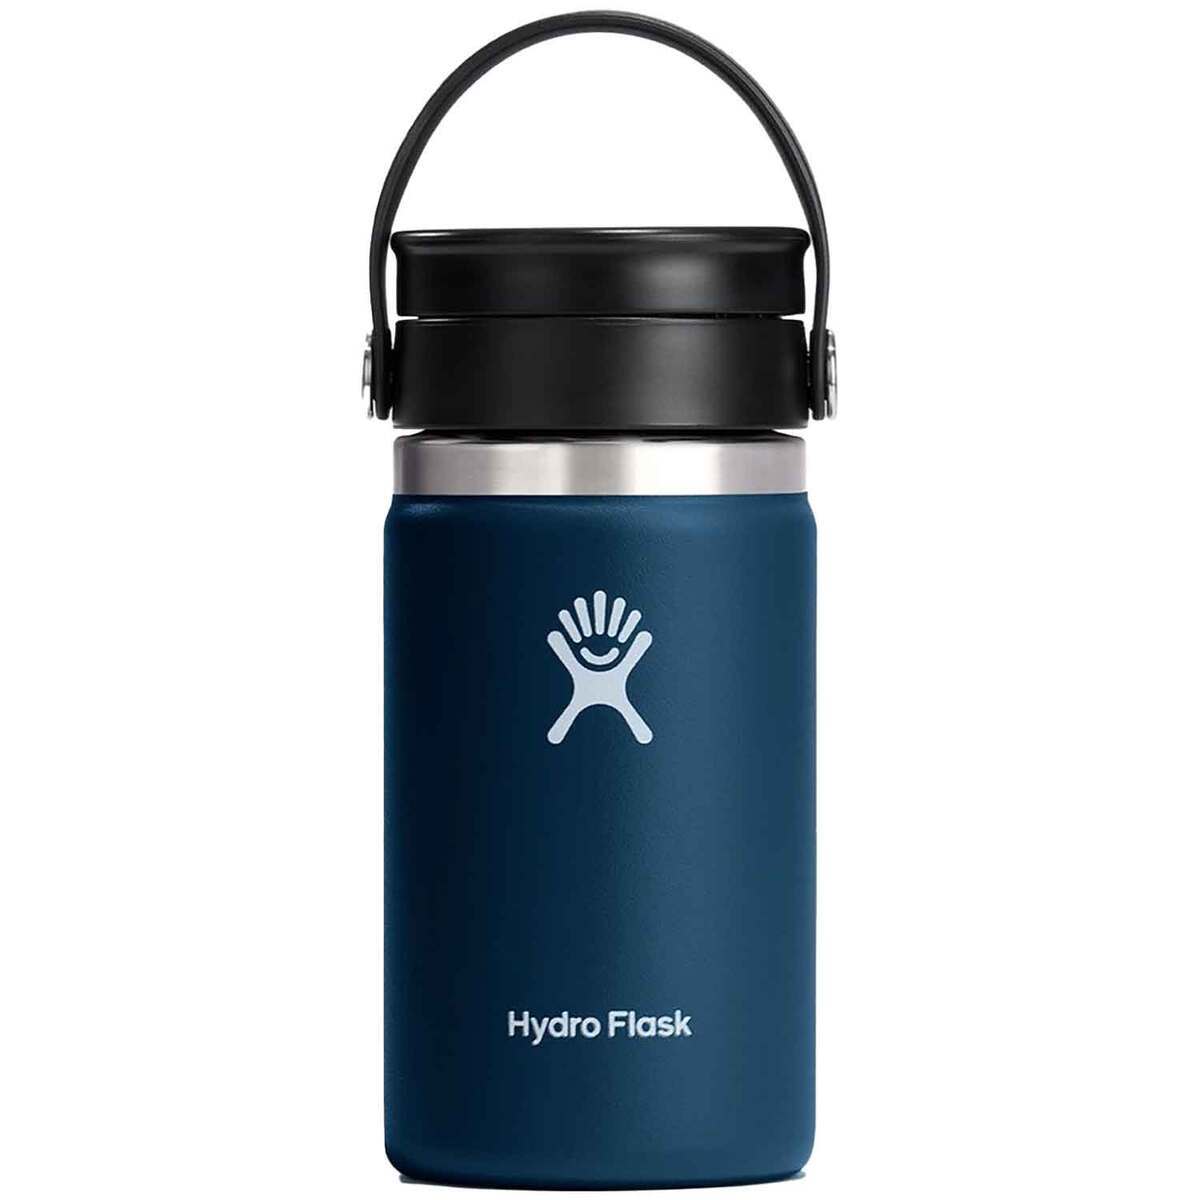 https://www.sportsmans.com/medias/hydro-flask-12oz-coffee-wide-mouth-insulated-bottle-with-flex-sip-lid-indigo-1743869-1.jpg?context=bWFzdGVyfGltYWdlc3wzNjExMnxpbWFnZS9qcGVnfGg1NC9oMWQvMTA3Mzc0MDcyOTU1MTgvMTc0Mzg2OS0xX2Jhc2UtY29udmVyc2lvbkZvcm1hdF8xMjAwLWNvbnZlcnNpb25Gb3JtYXR8Mjc4ZTdlZjI0N2Y3ZjI2NTBkOGI2YmI4MThjOGRjM2JhYzdkMTQ1YzkyMjQxNzM5YTMzOGZkM2MyYjY0NmVhNw